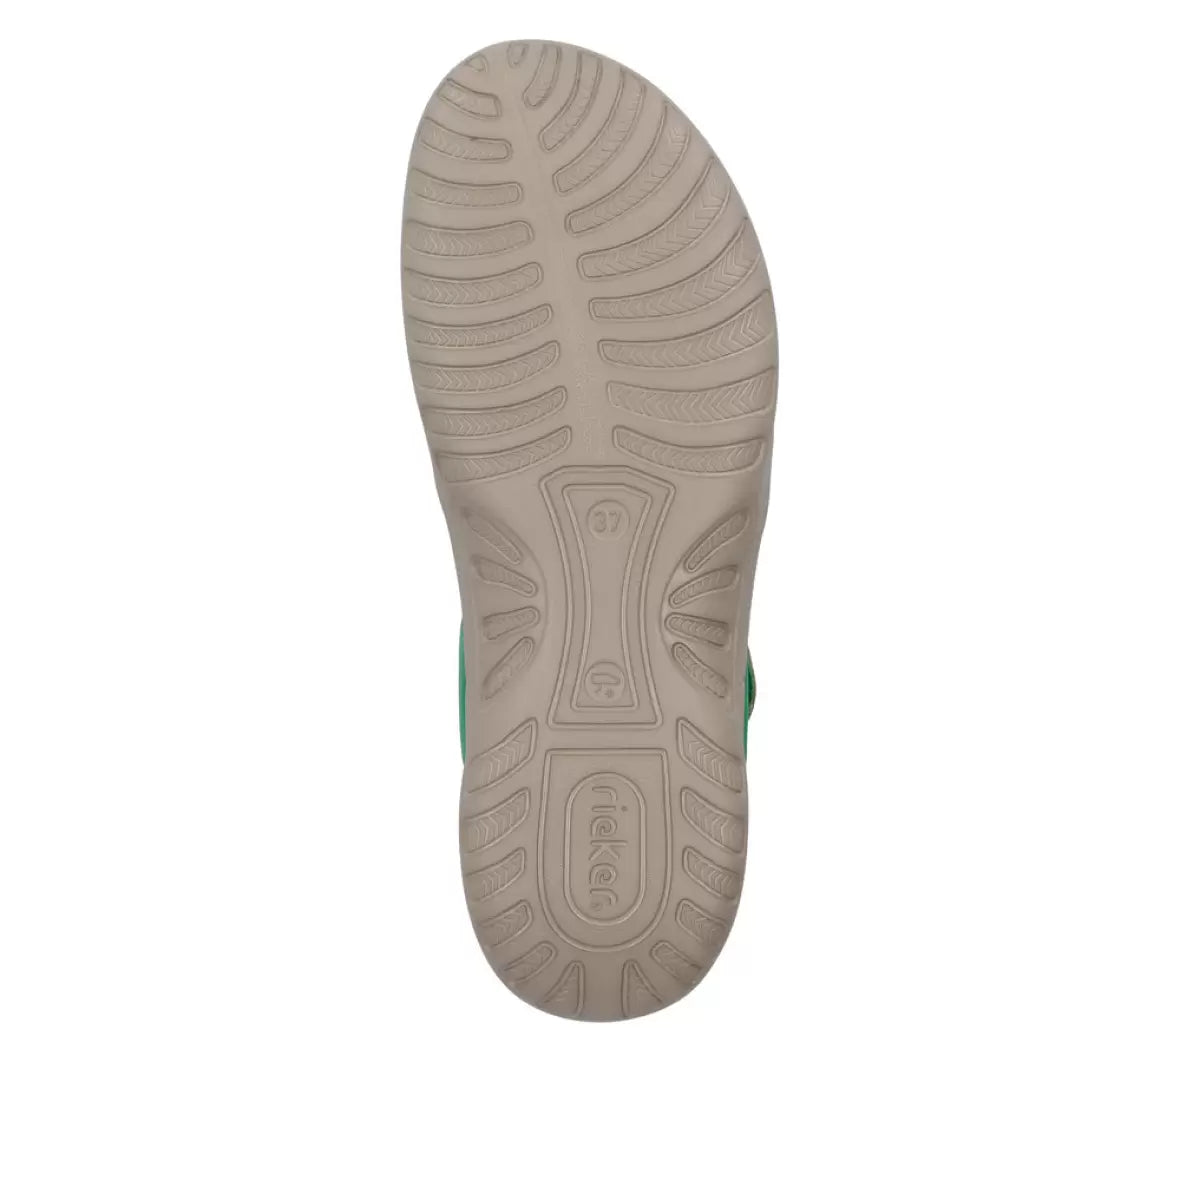 Rieker - Sandal med elastikremme, 42-0680 - Grøn